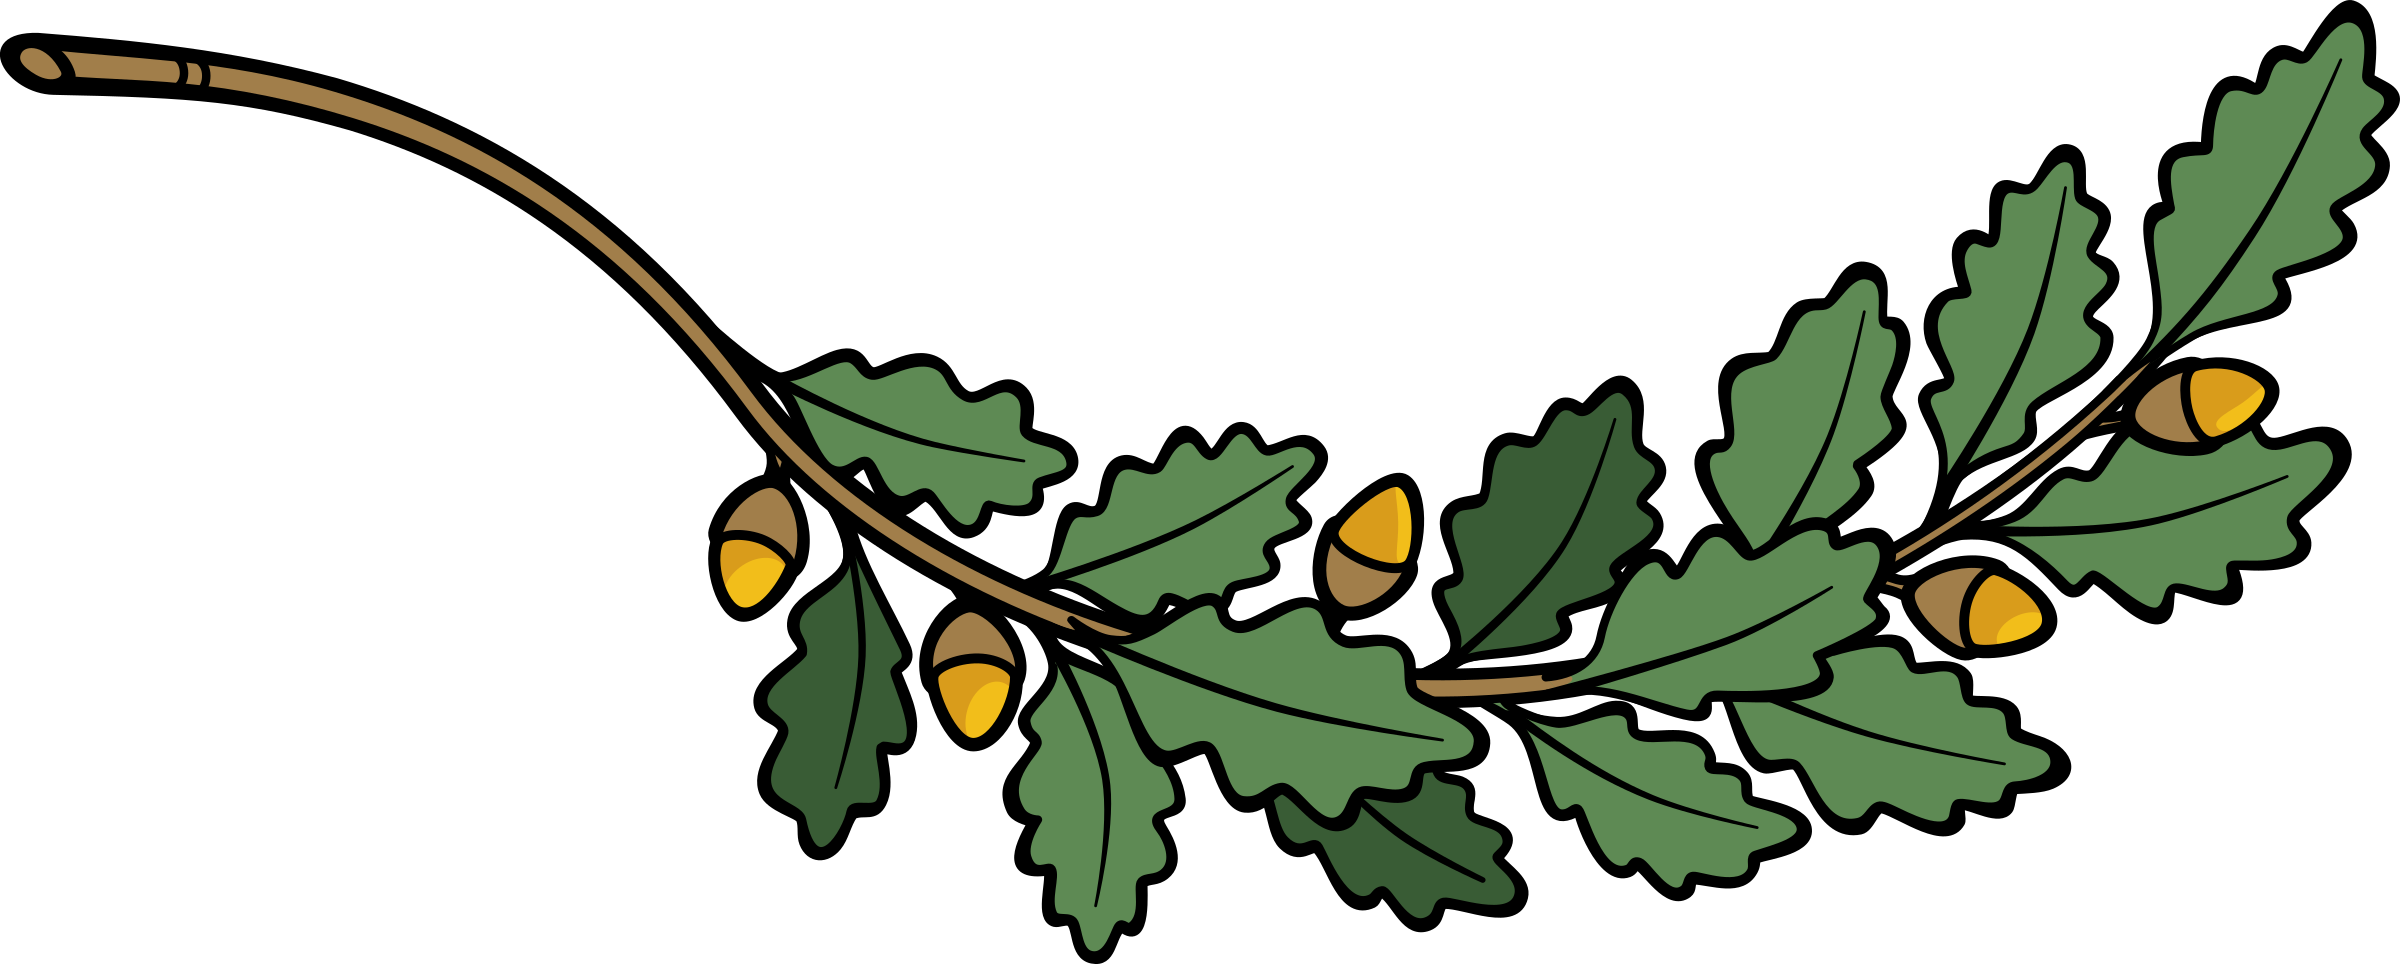 تصویر جدید کارتونی شاخه درخت بلوط با برگ و میوه